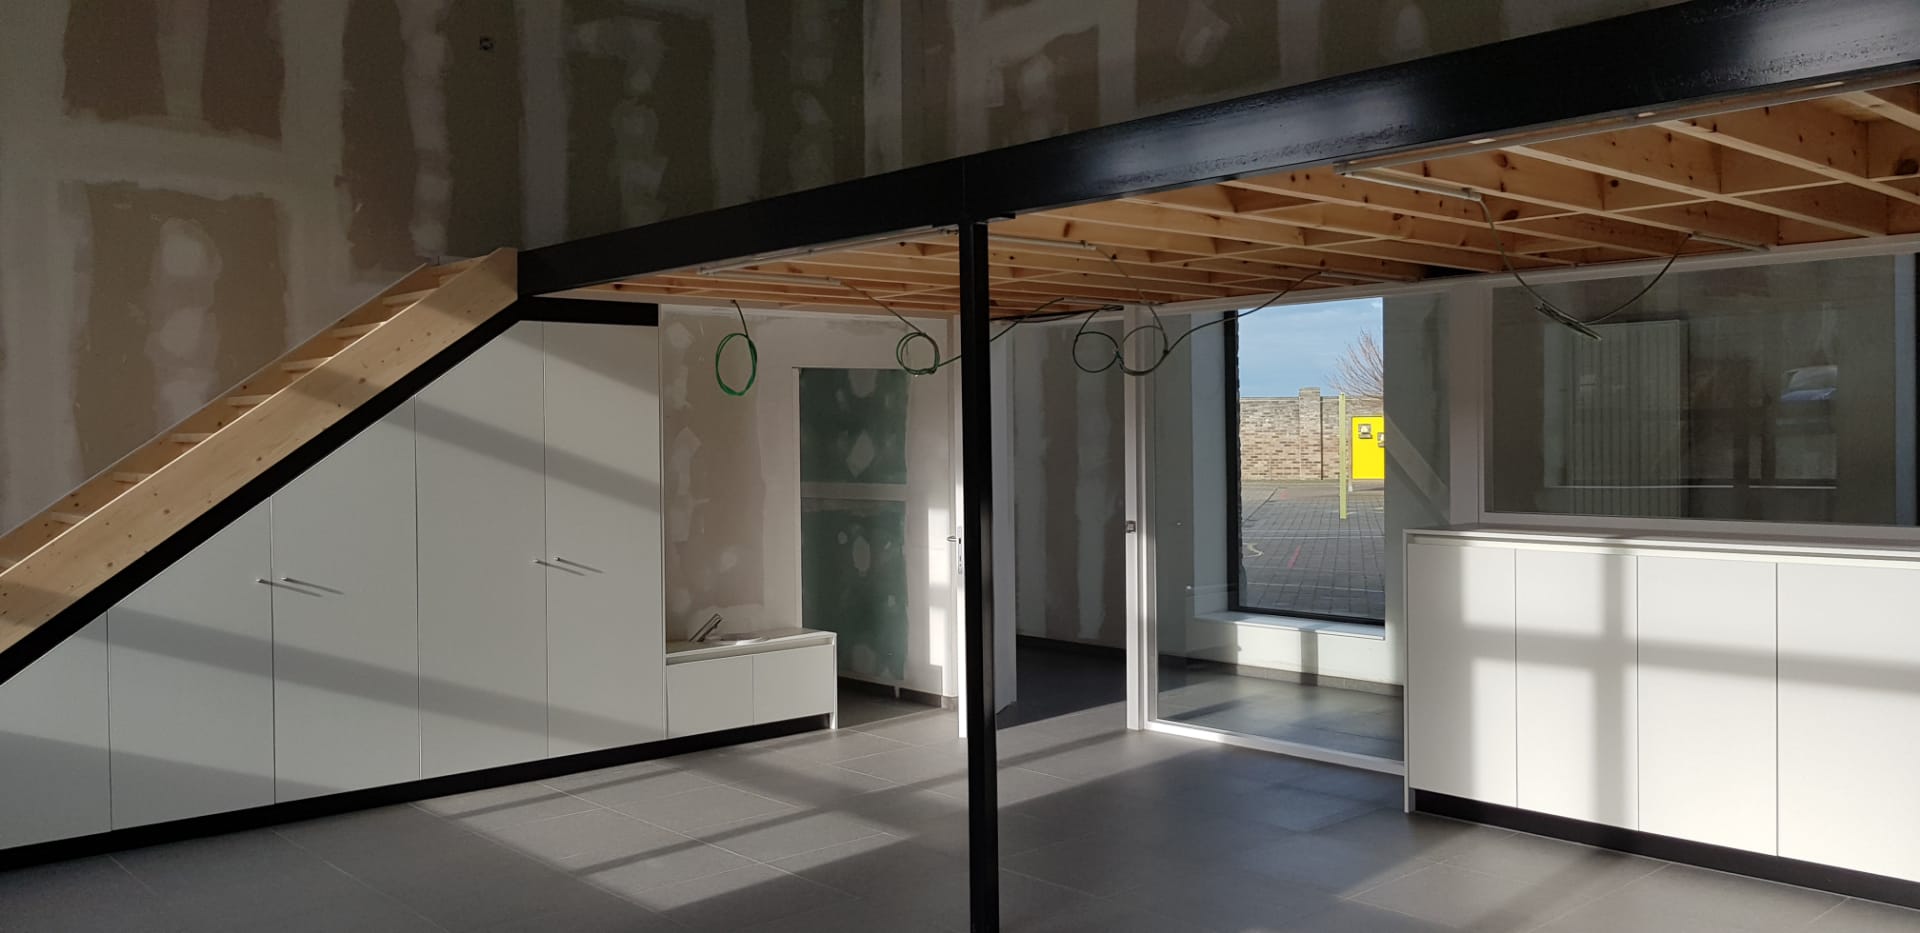 Binnendeuren, trappen, tussenvloeren en meubilair kleuterschool Waanrode - Vrago Interieur